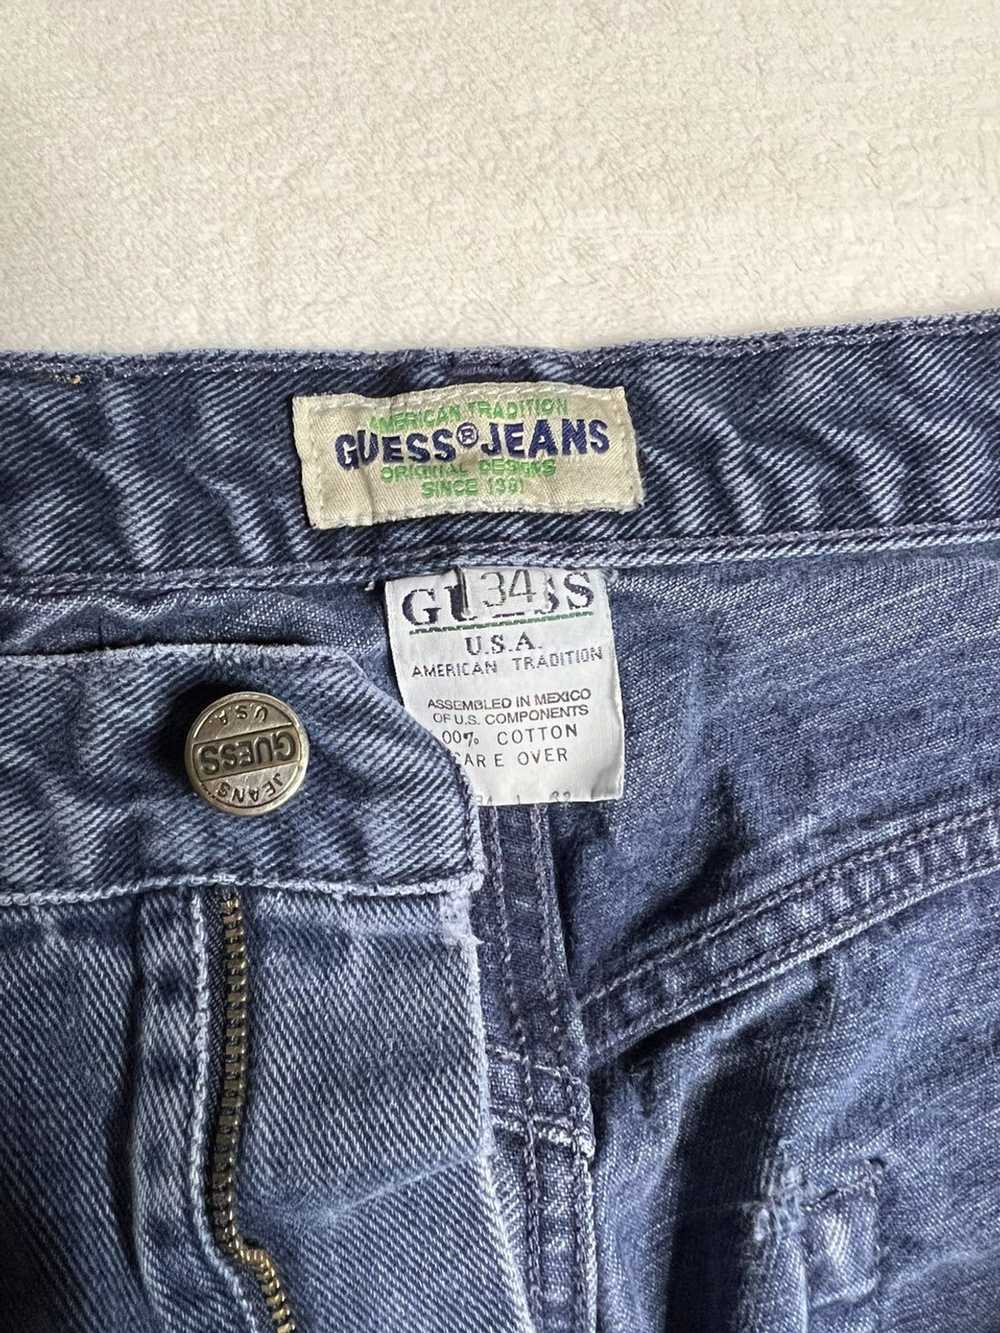 Guess Vintage Guess Denim Pants - image 4